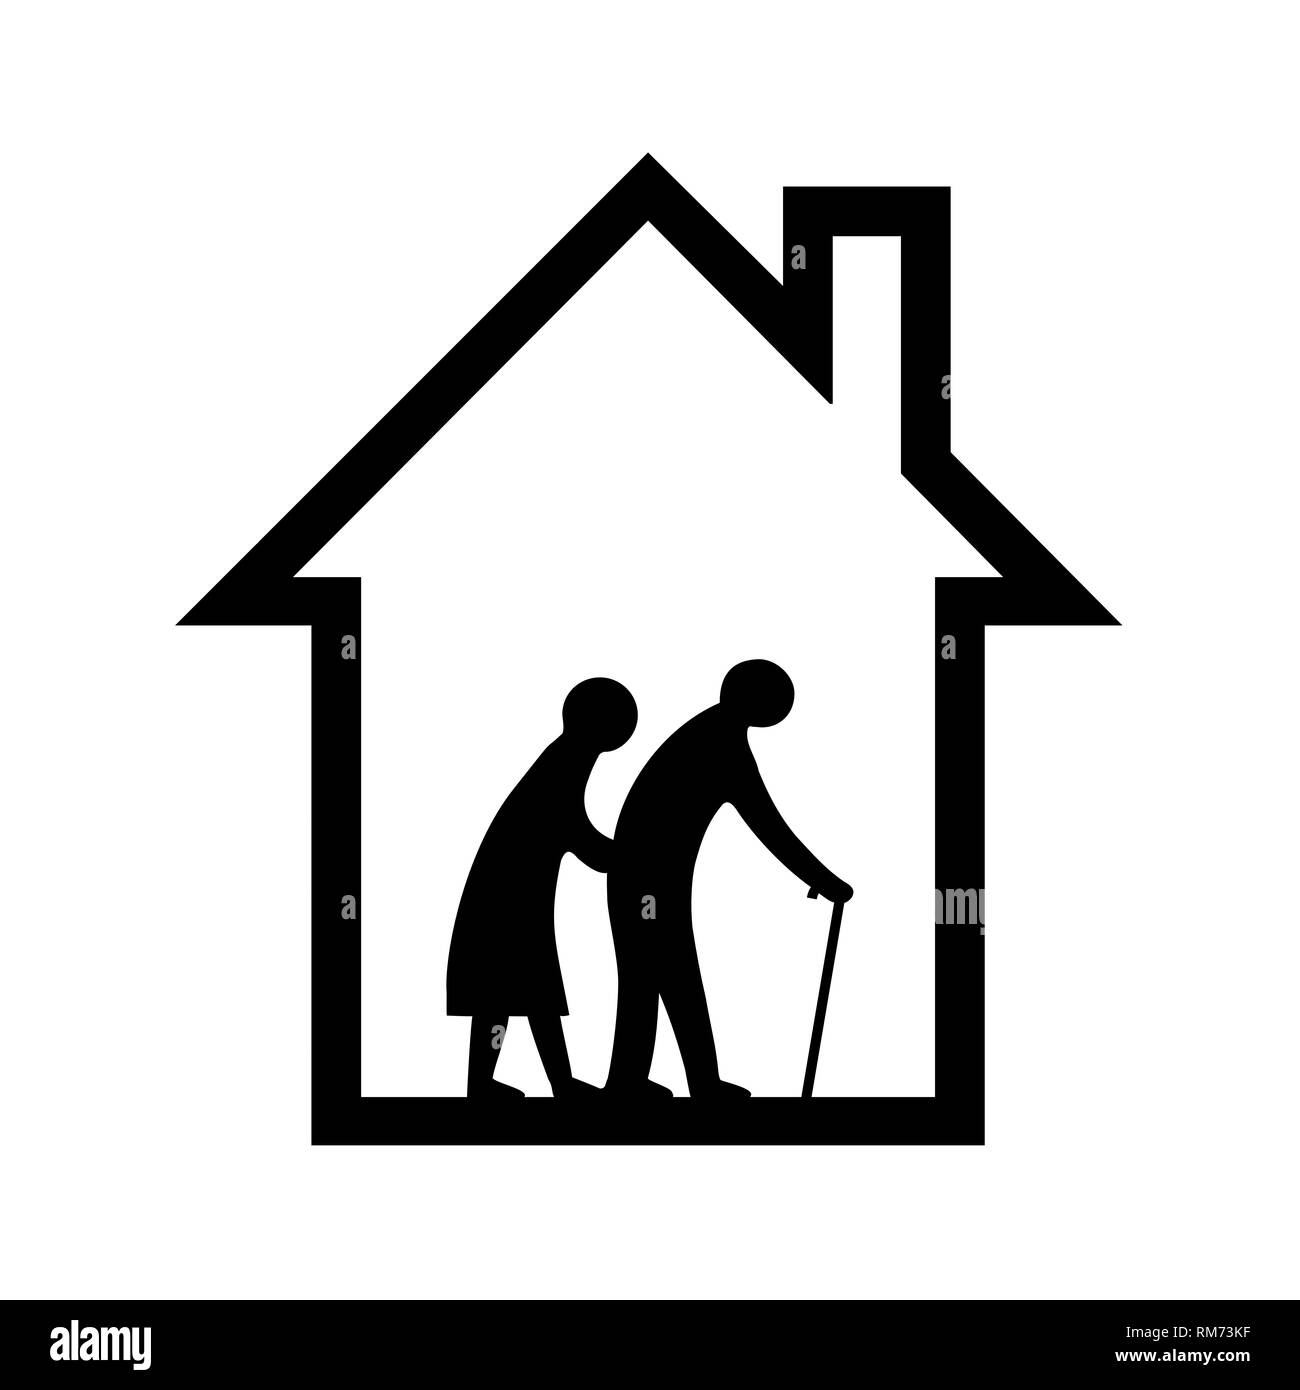 Retirement house symbol icon Stock Photo